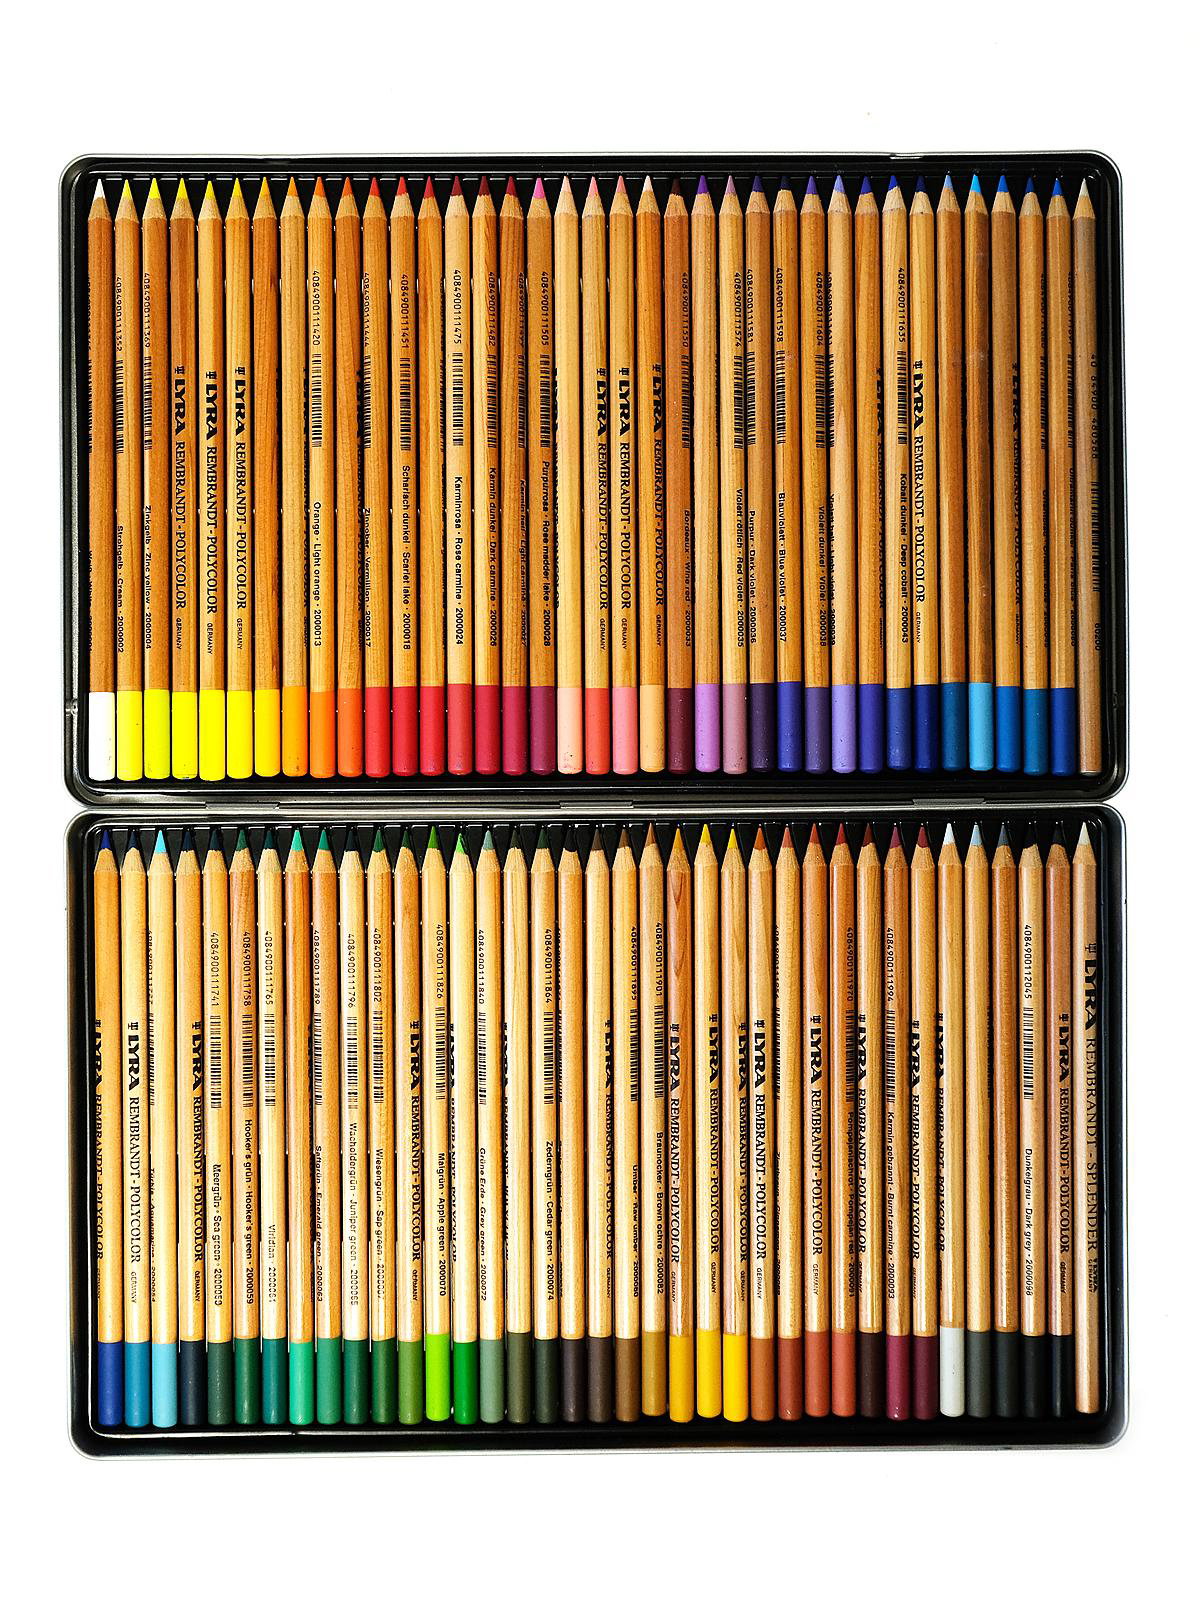 Lyra - Rembrandt Polycolor Colored Pencil Set - 72-Color Set